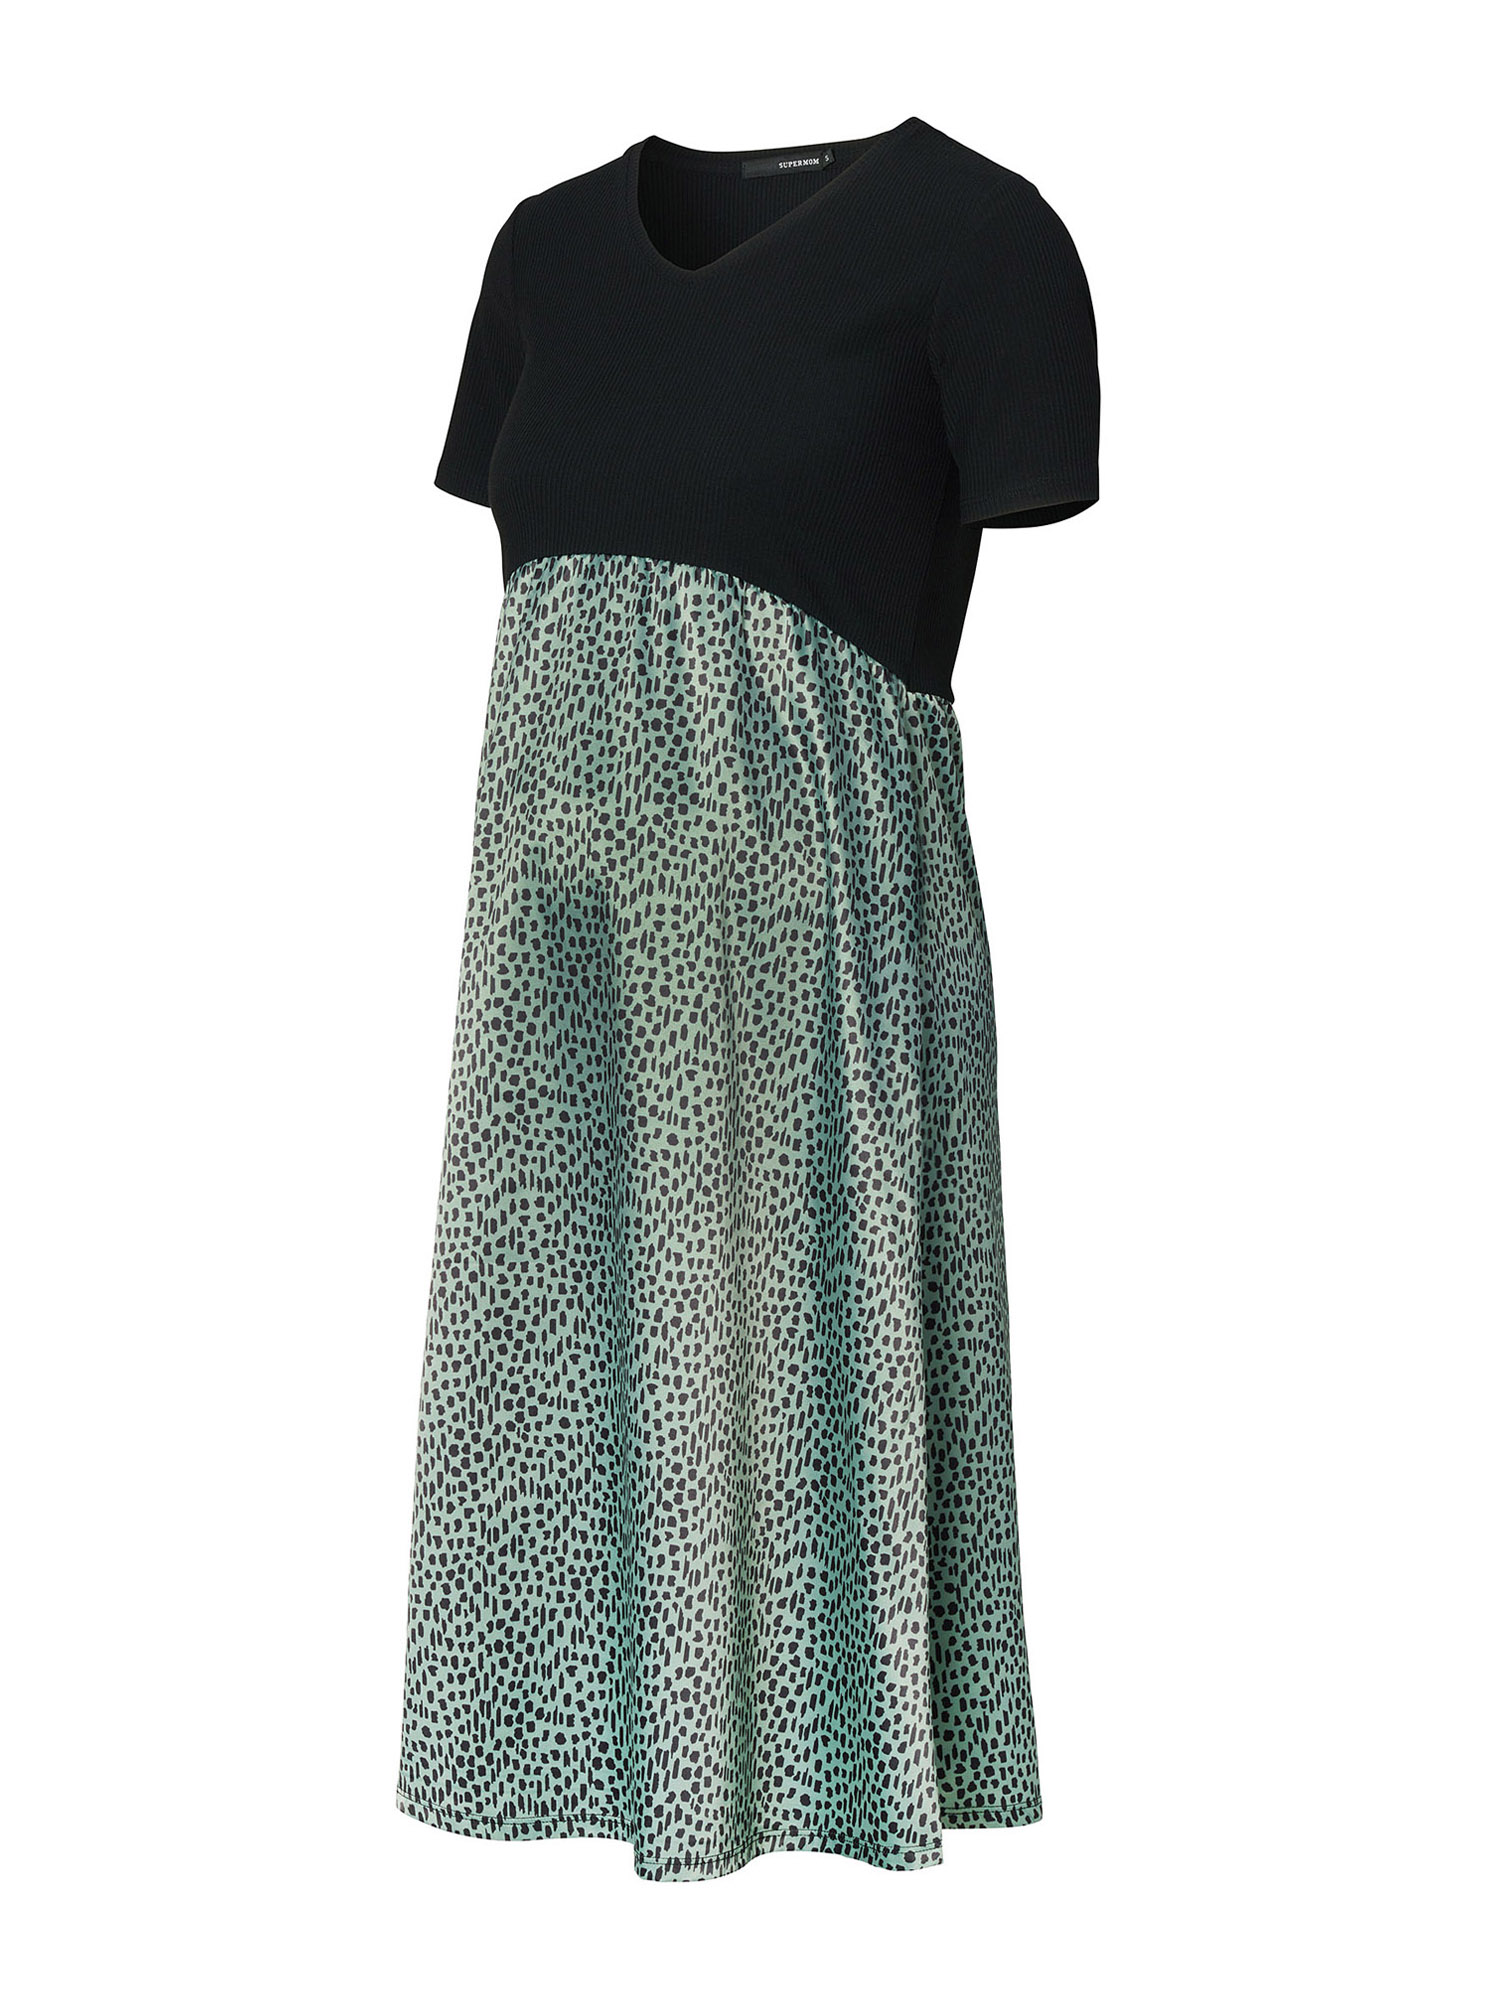 Odzież SArMY Supermom Sukienka Leopard w kolorze Miętowym 